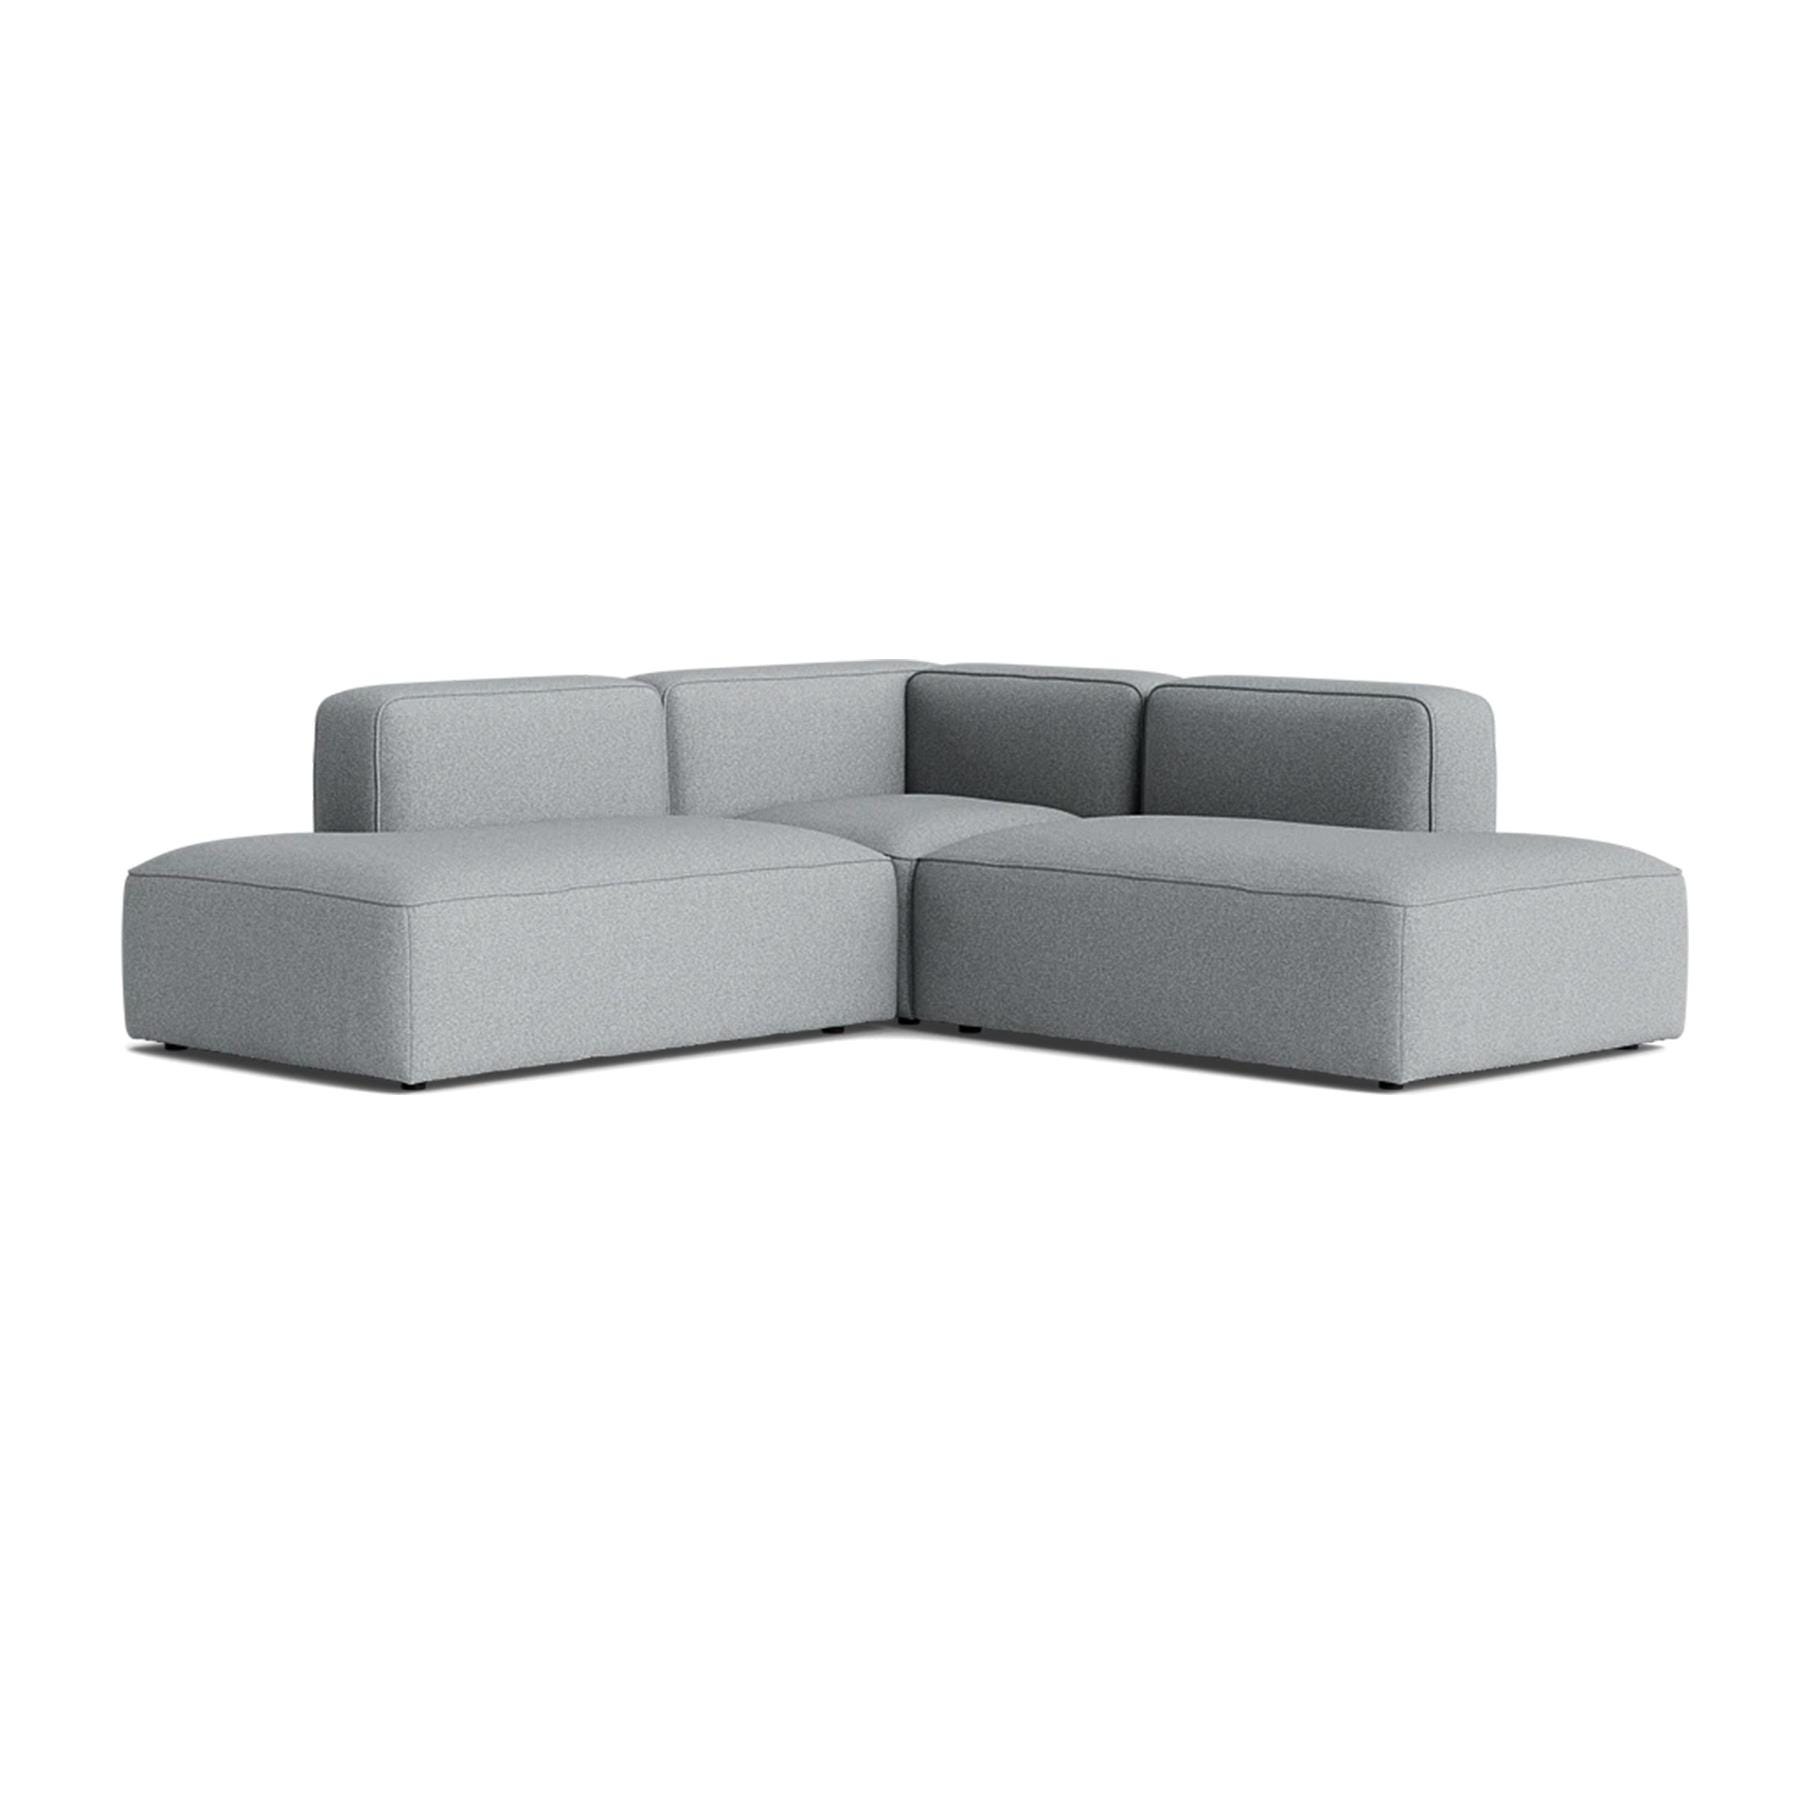 Make Nordic Basecamp Corner Sofa With Open Ends Hallingdal 130 Grey Designer Furniture From Holloways Of Ludlow